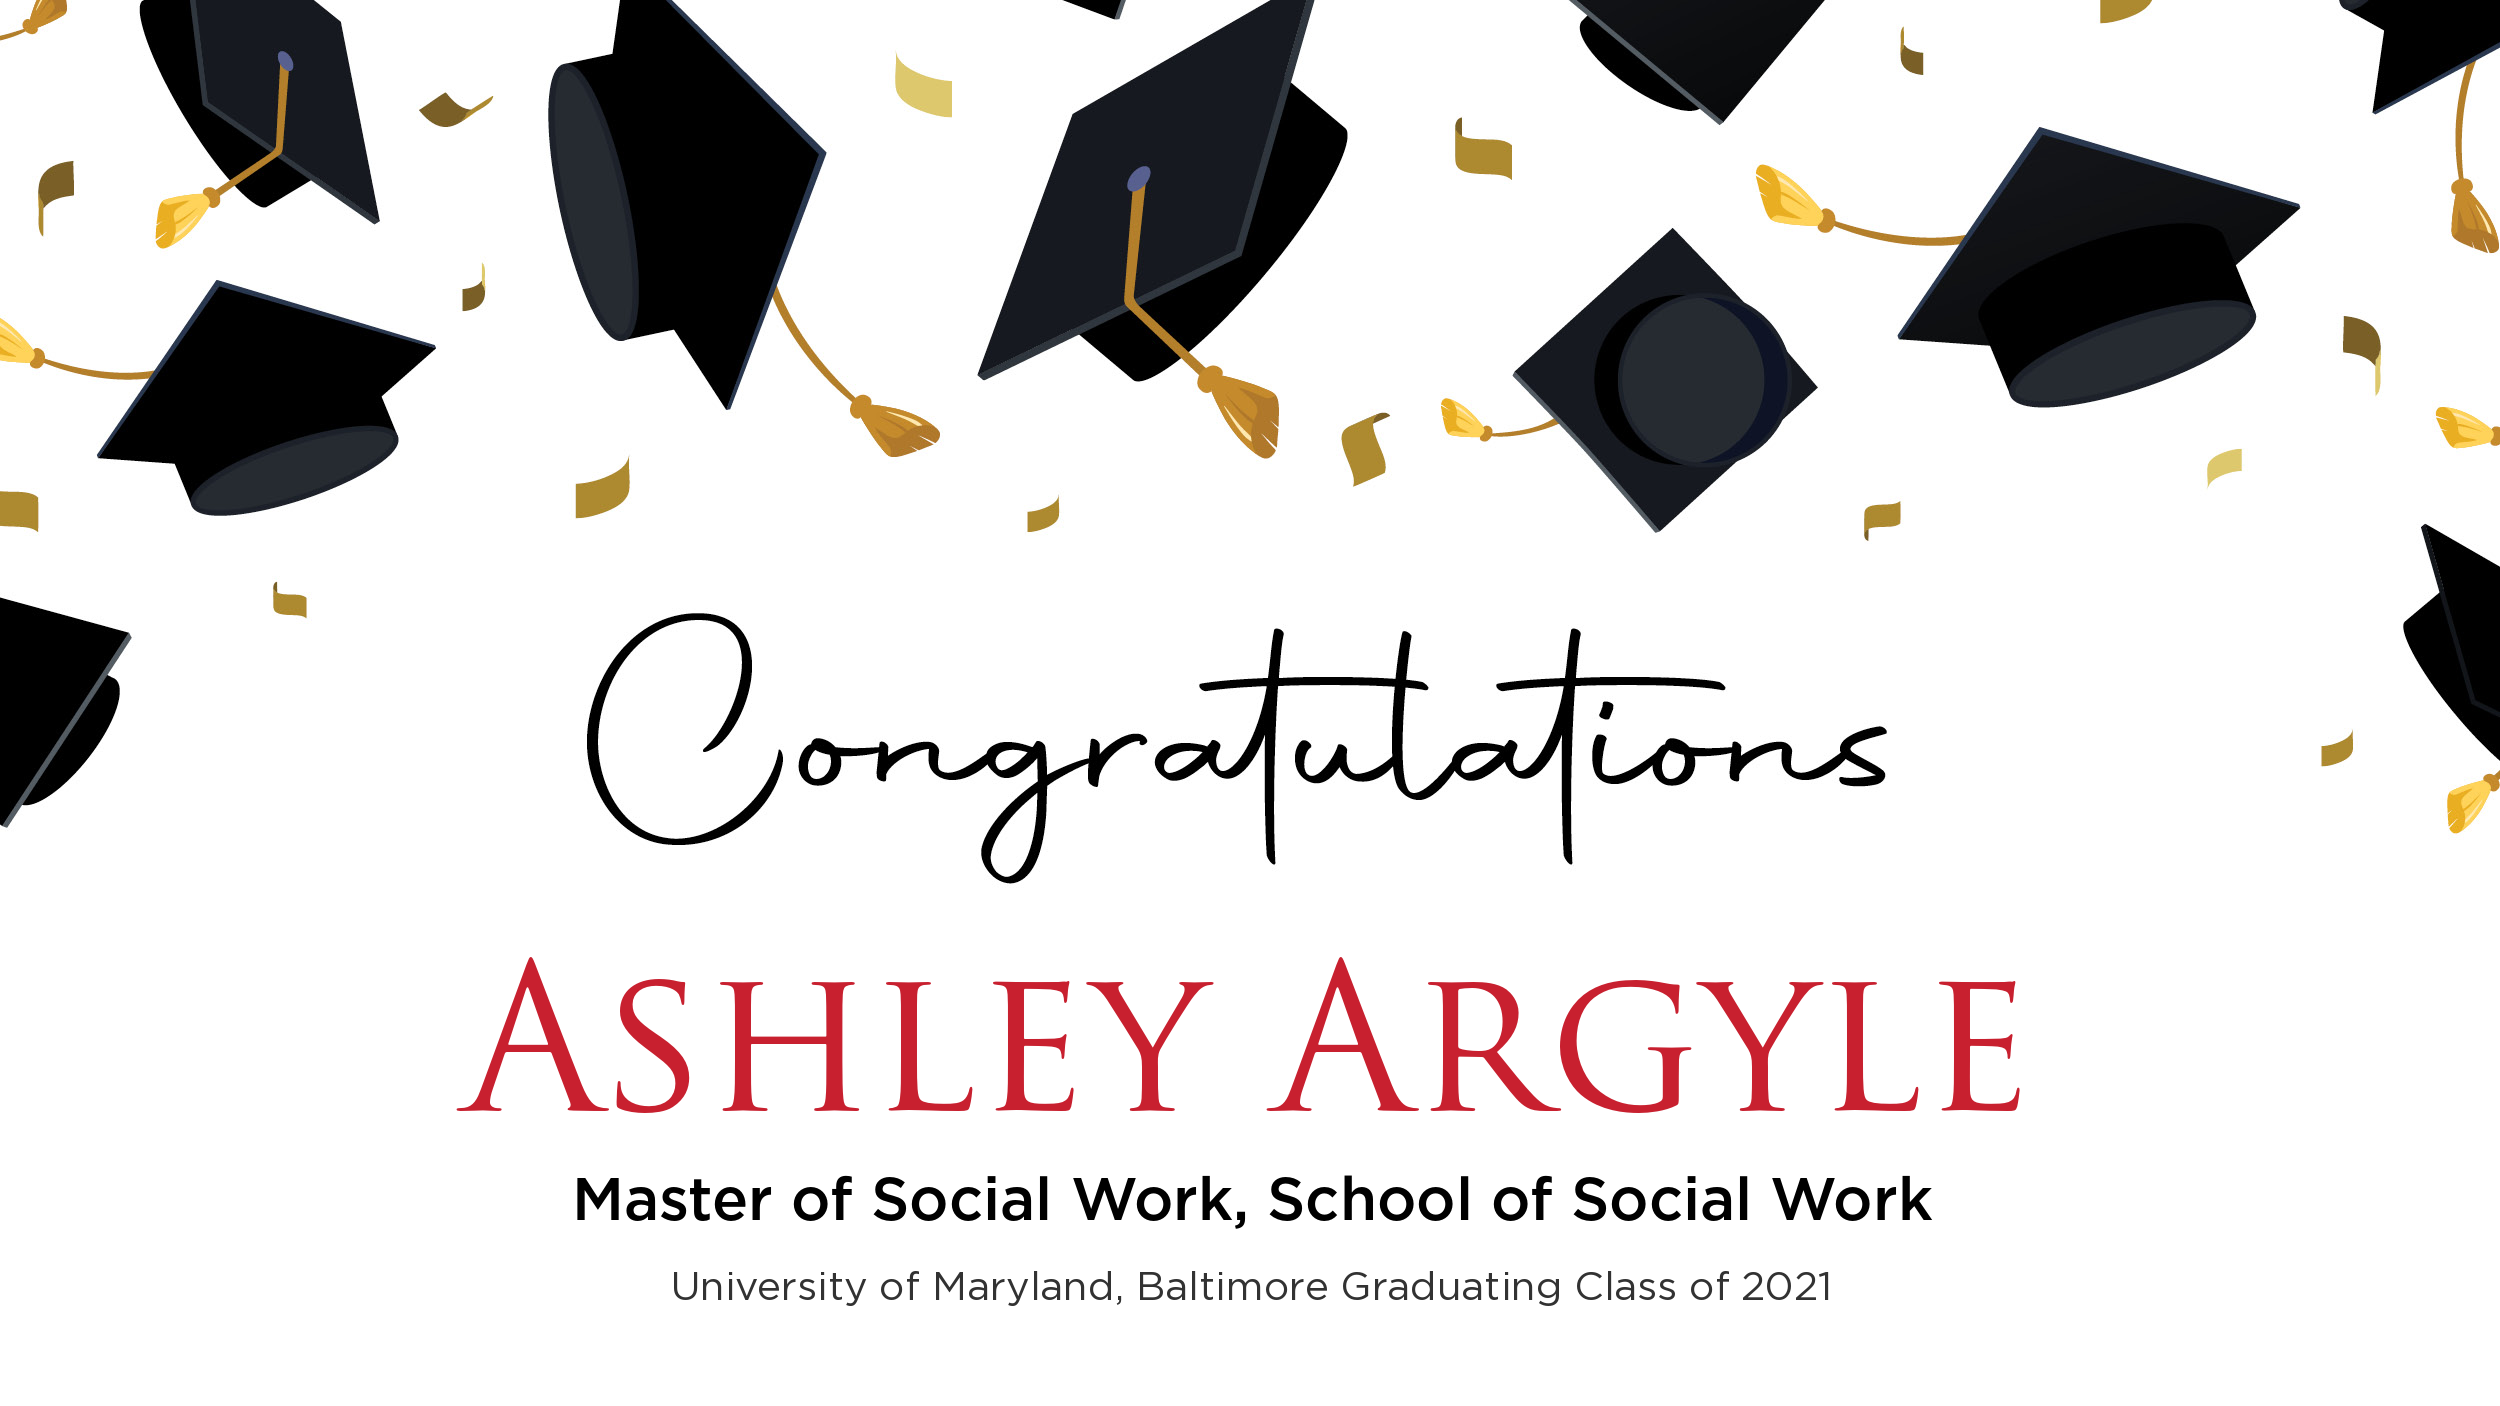 Congratulations Ashley Argyle, Master of Social Work